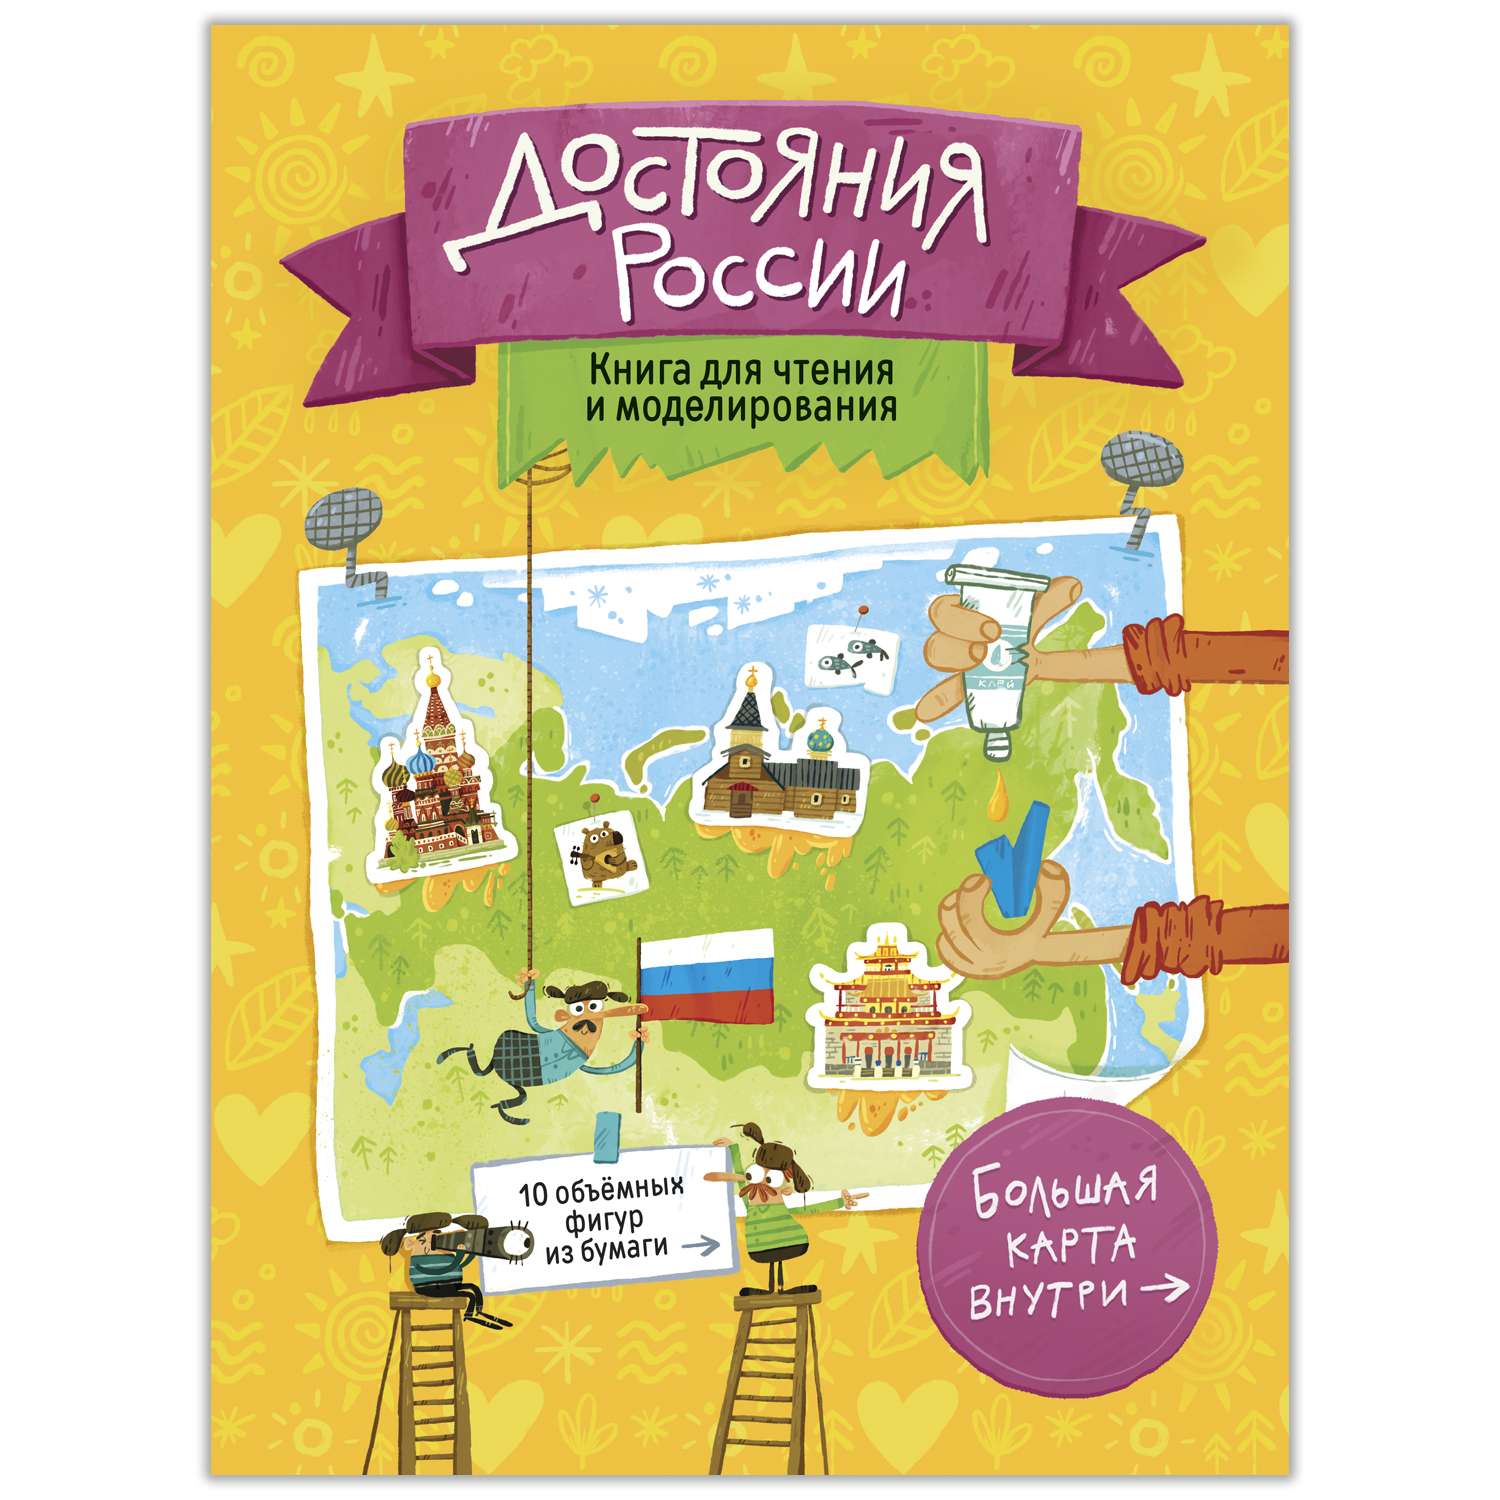 Книга ГЕОДОМ Достояния России для чтения и моделирования 4180 - фото 1